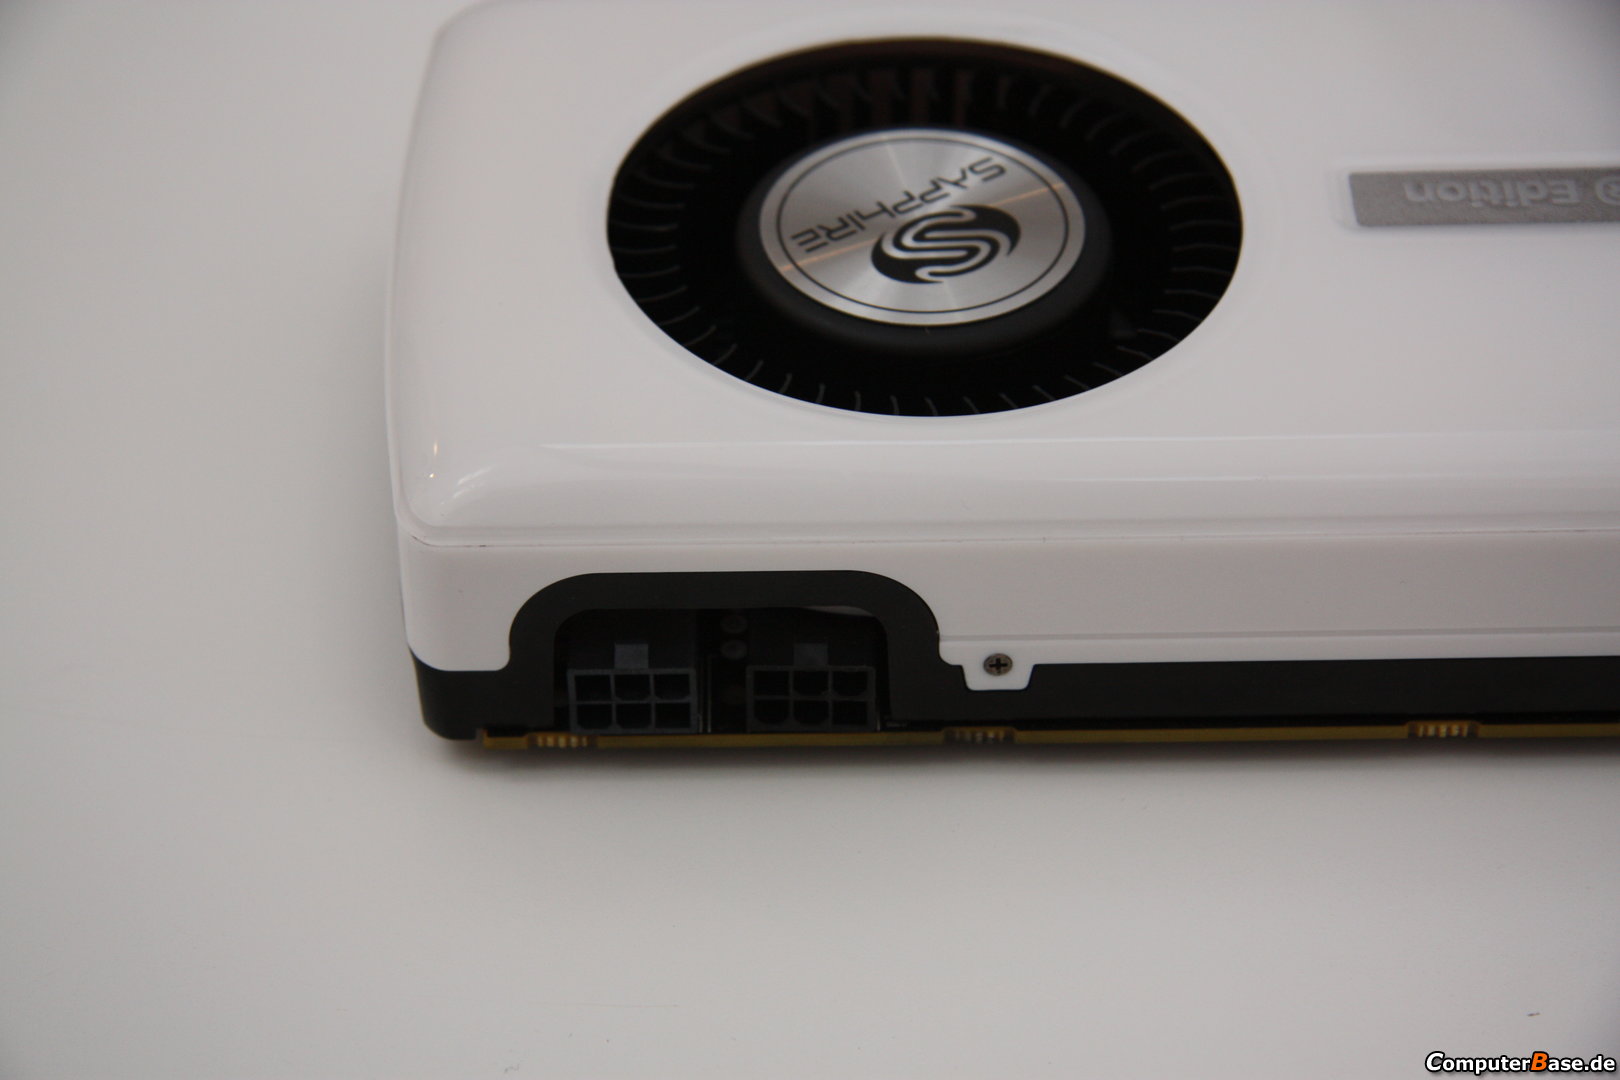 Immagine pubblicata in relazione al seguente contenuto: Sapphire mostra una costosa card Radeon HD 7950 Mac Edition | Nome immagine: news19099_Sapphire-Radeon-HD-7950-Mac-Edition_4.jpg